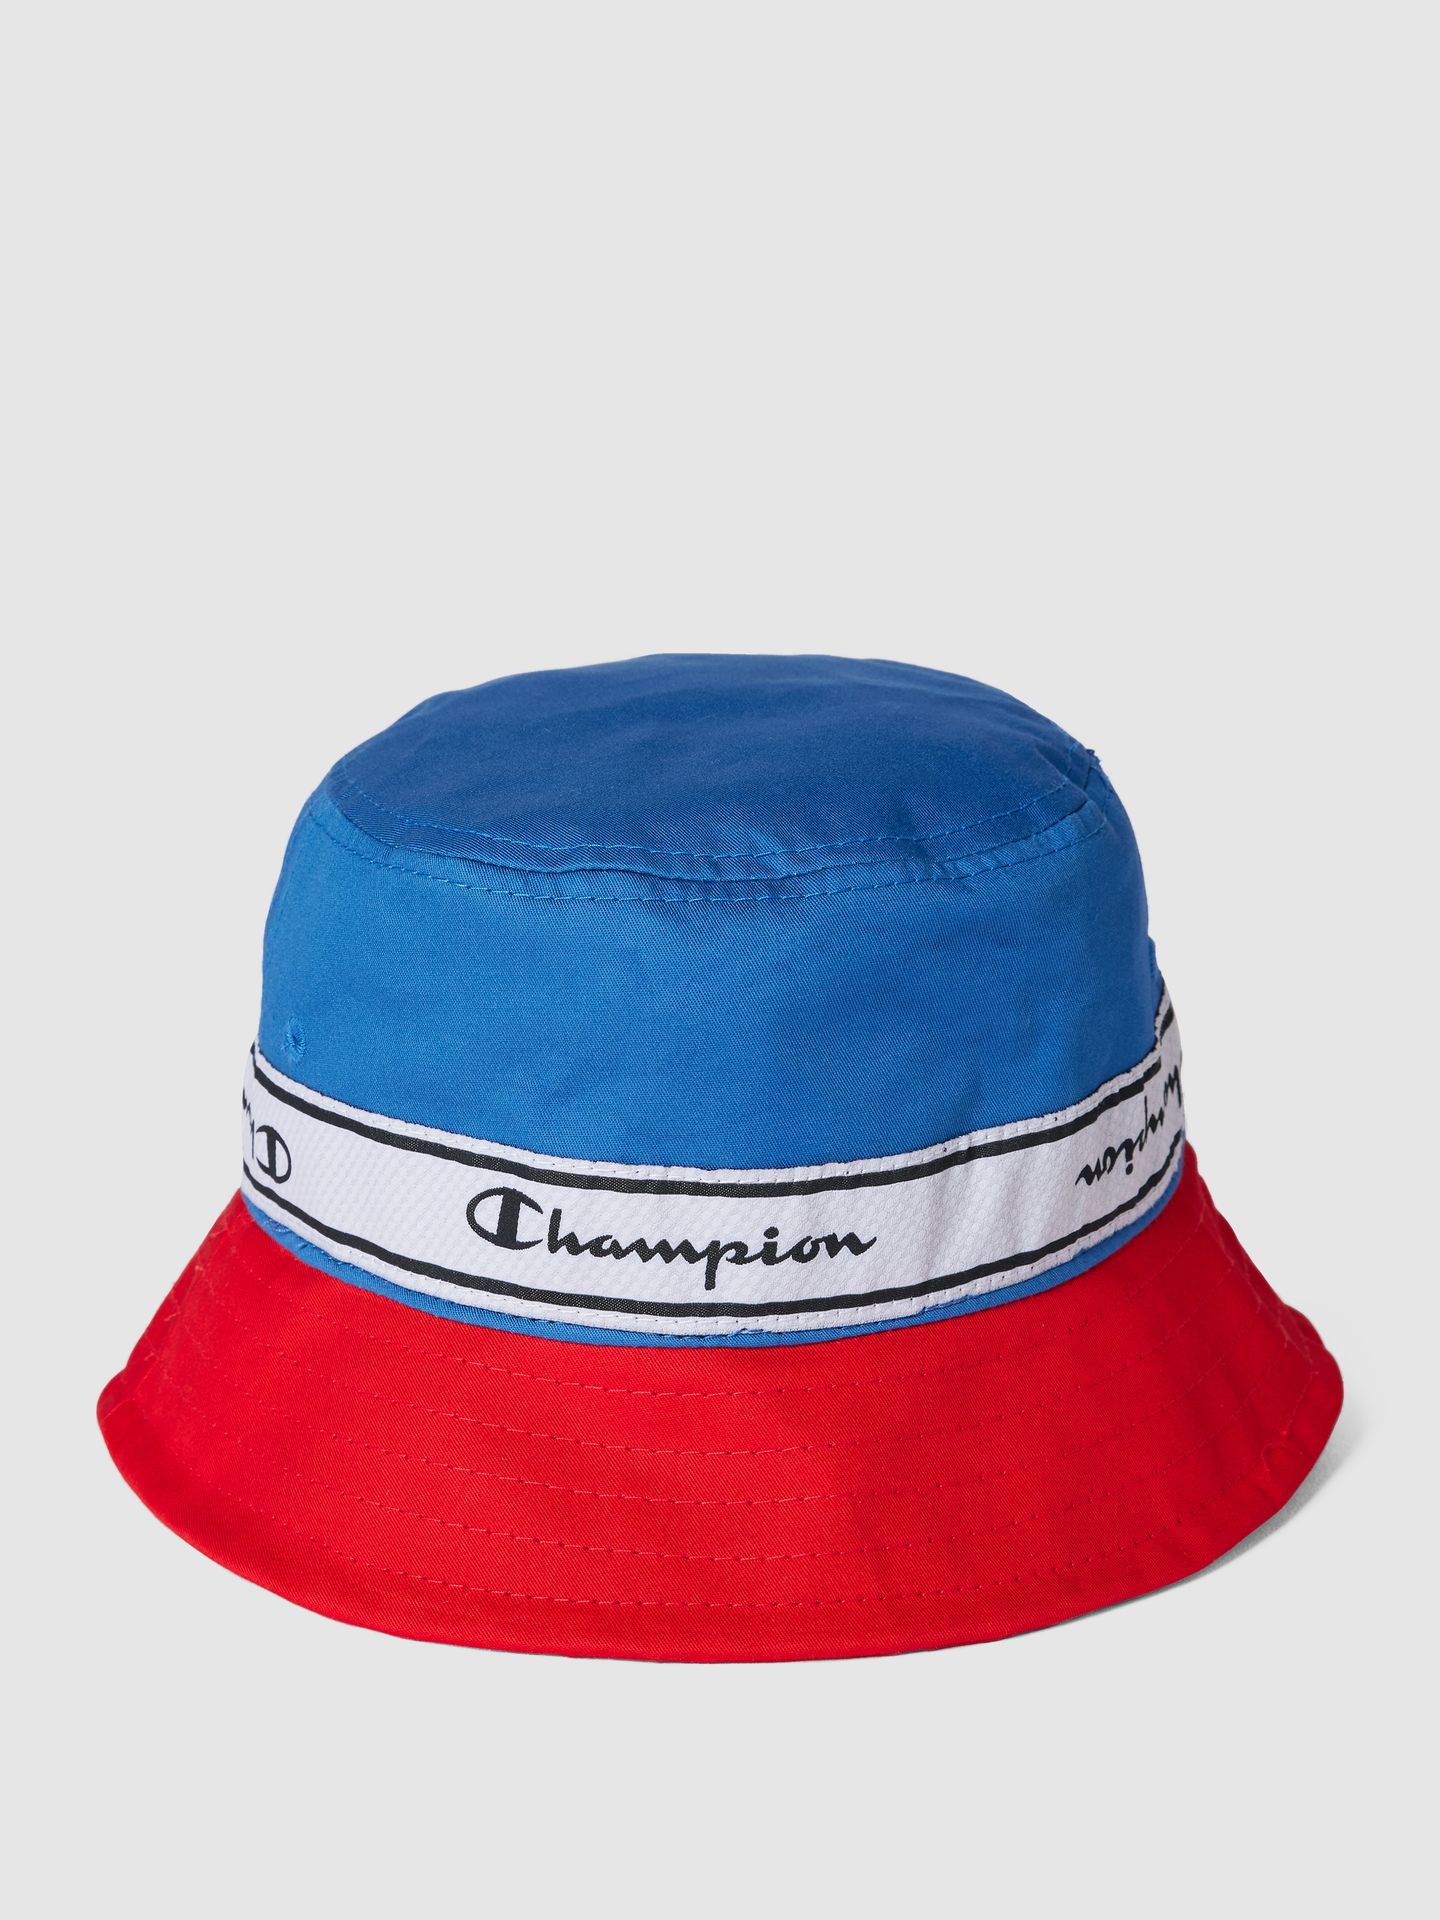 Czapka typu bucket hat z paskami w kontrastowym kolorze i napisem z logo